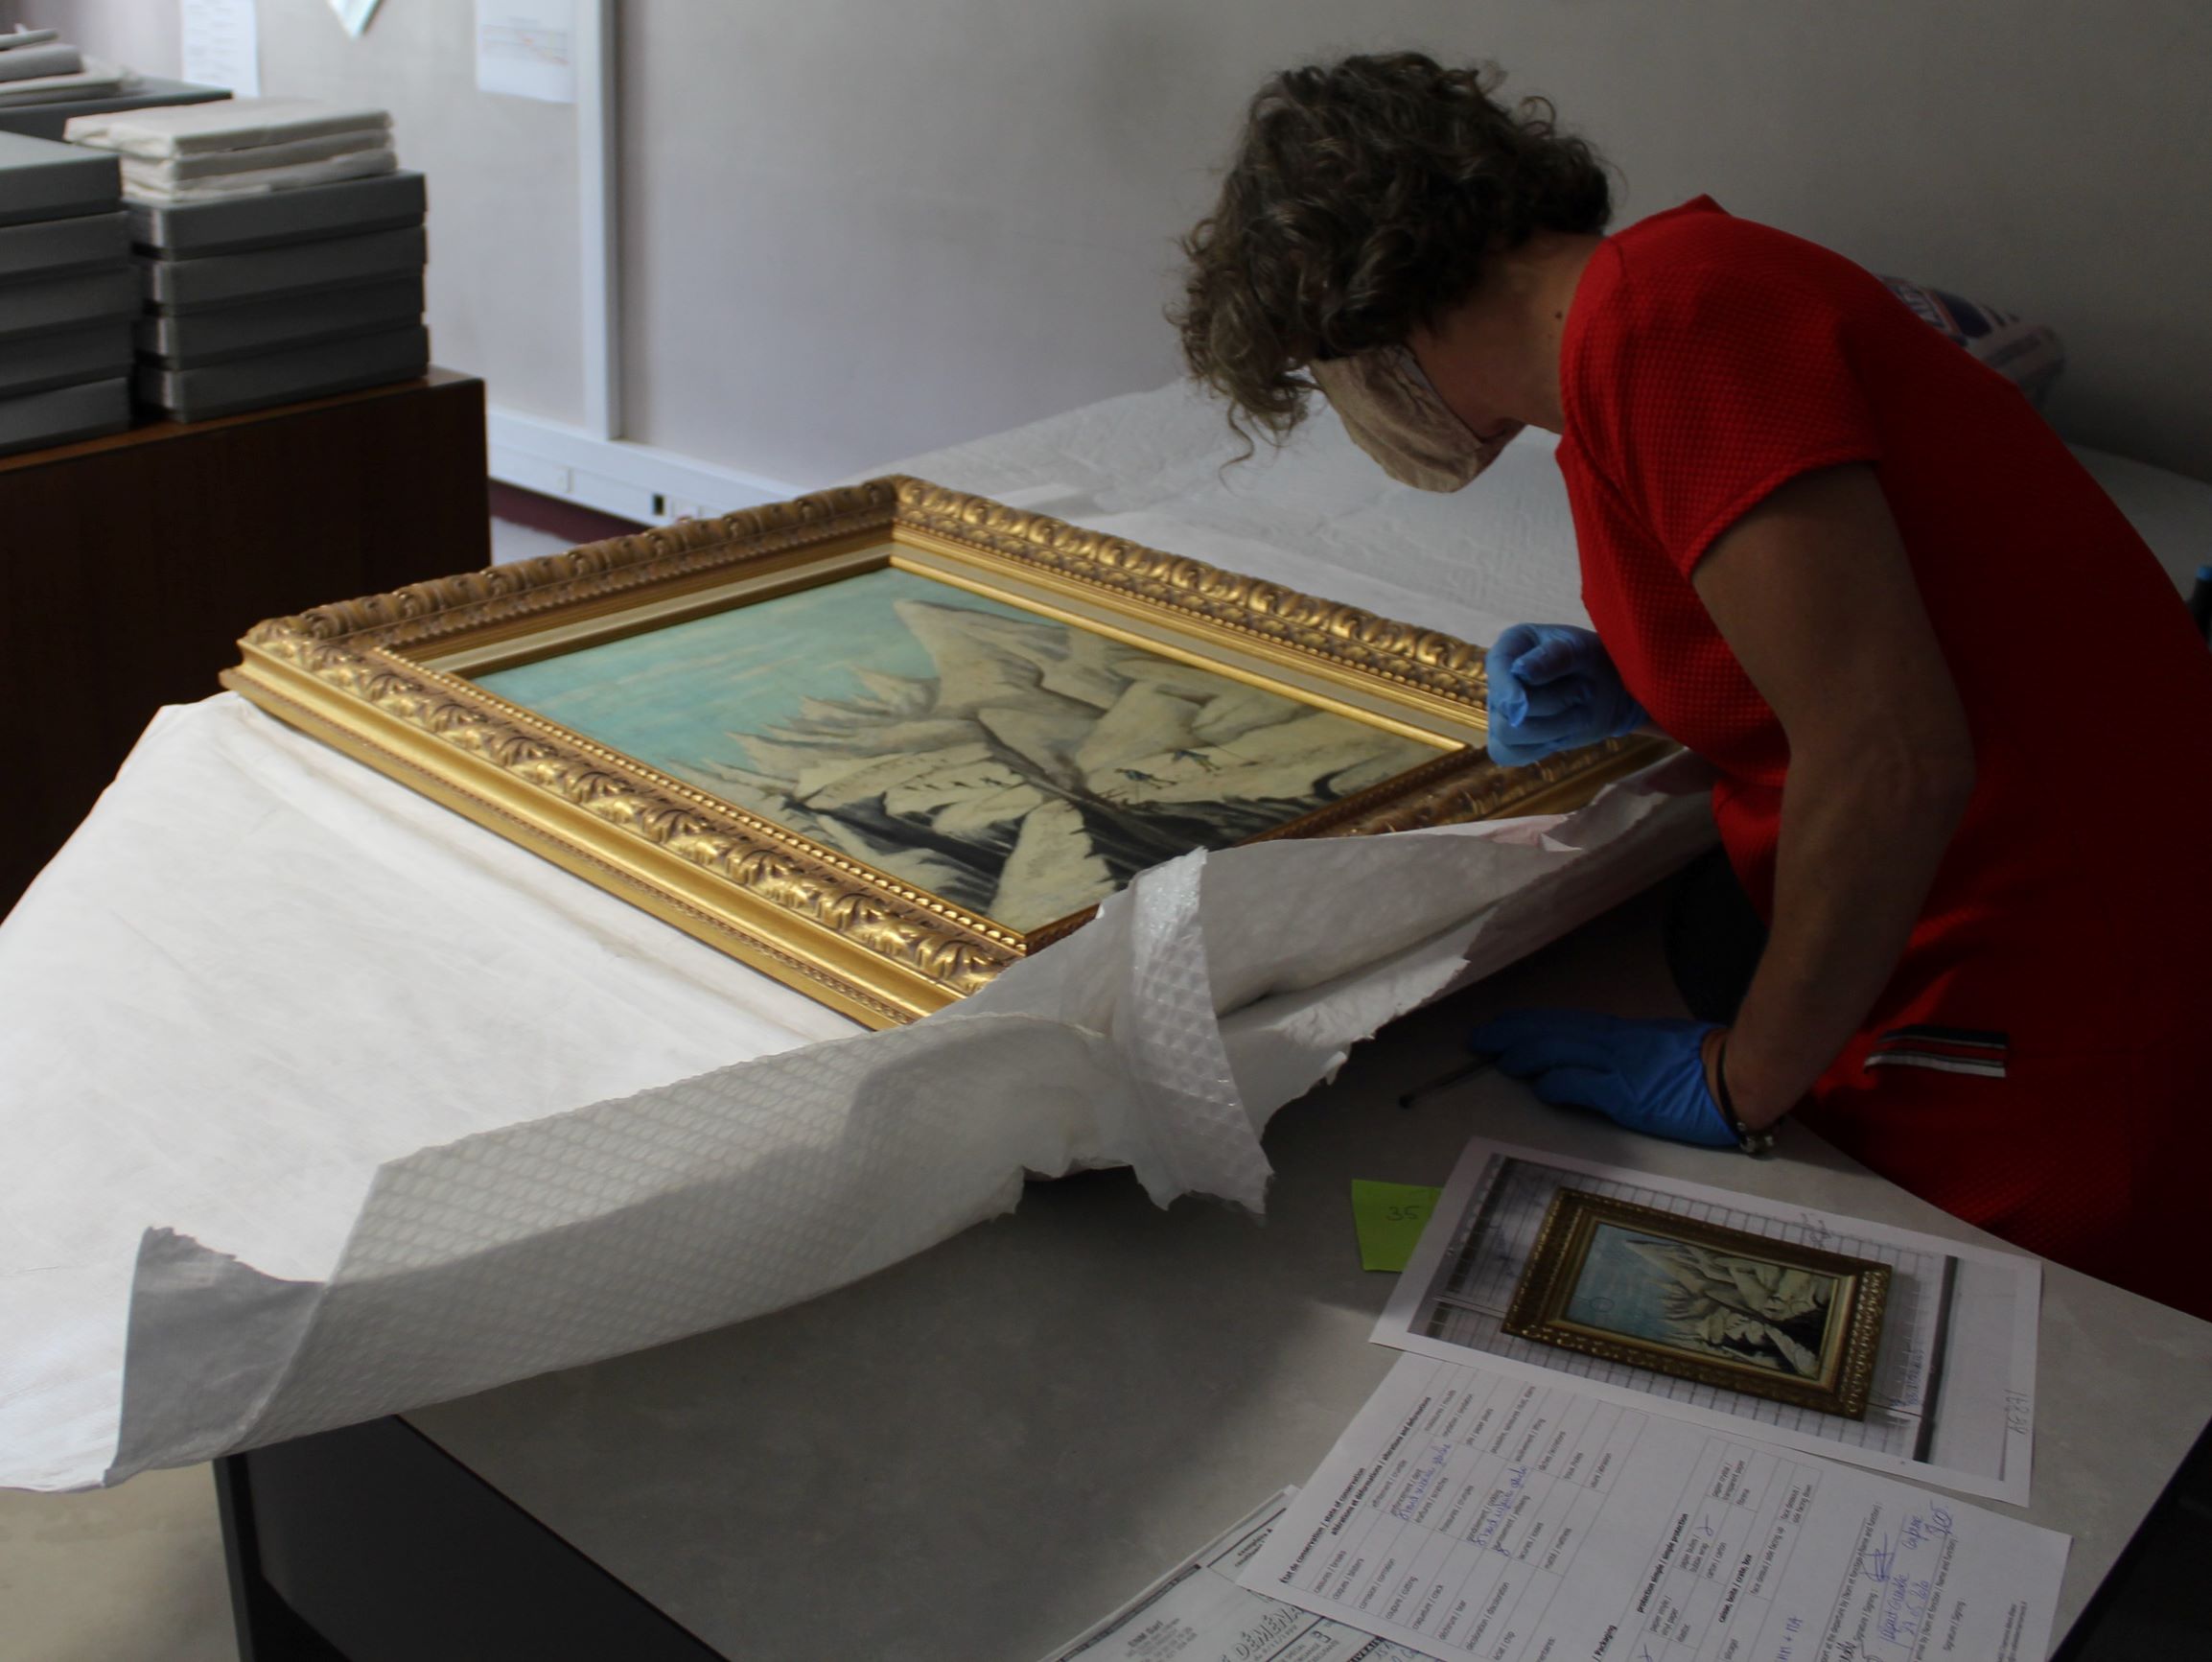 Actualités des collections du musée Alpin : retour d'un prêt de tableaux ©musée Alpin